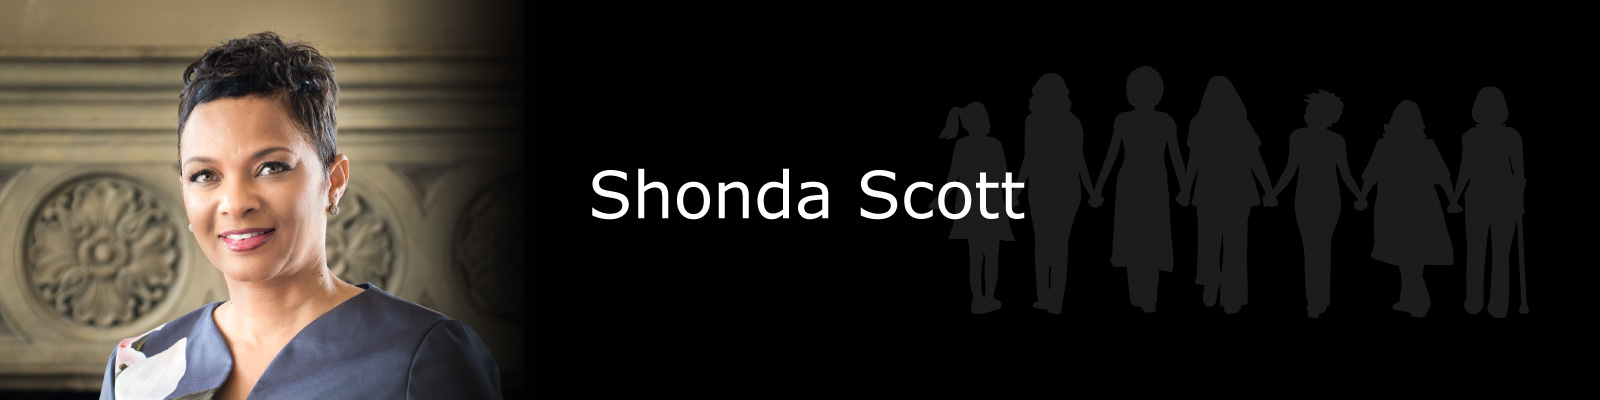 Photo of Shonda Scott.